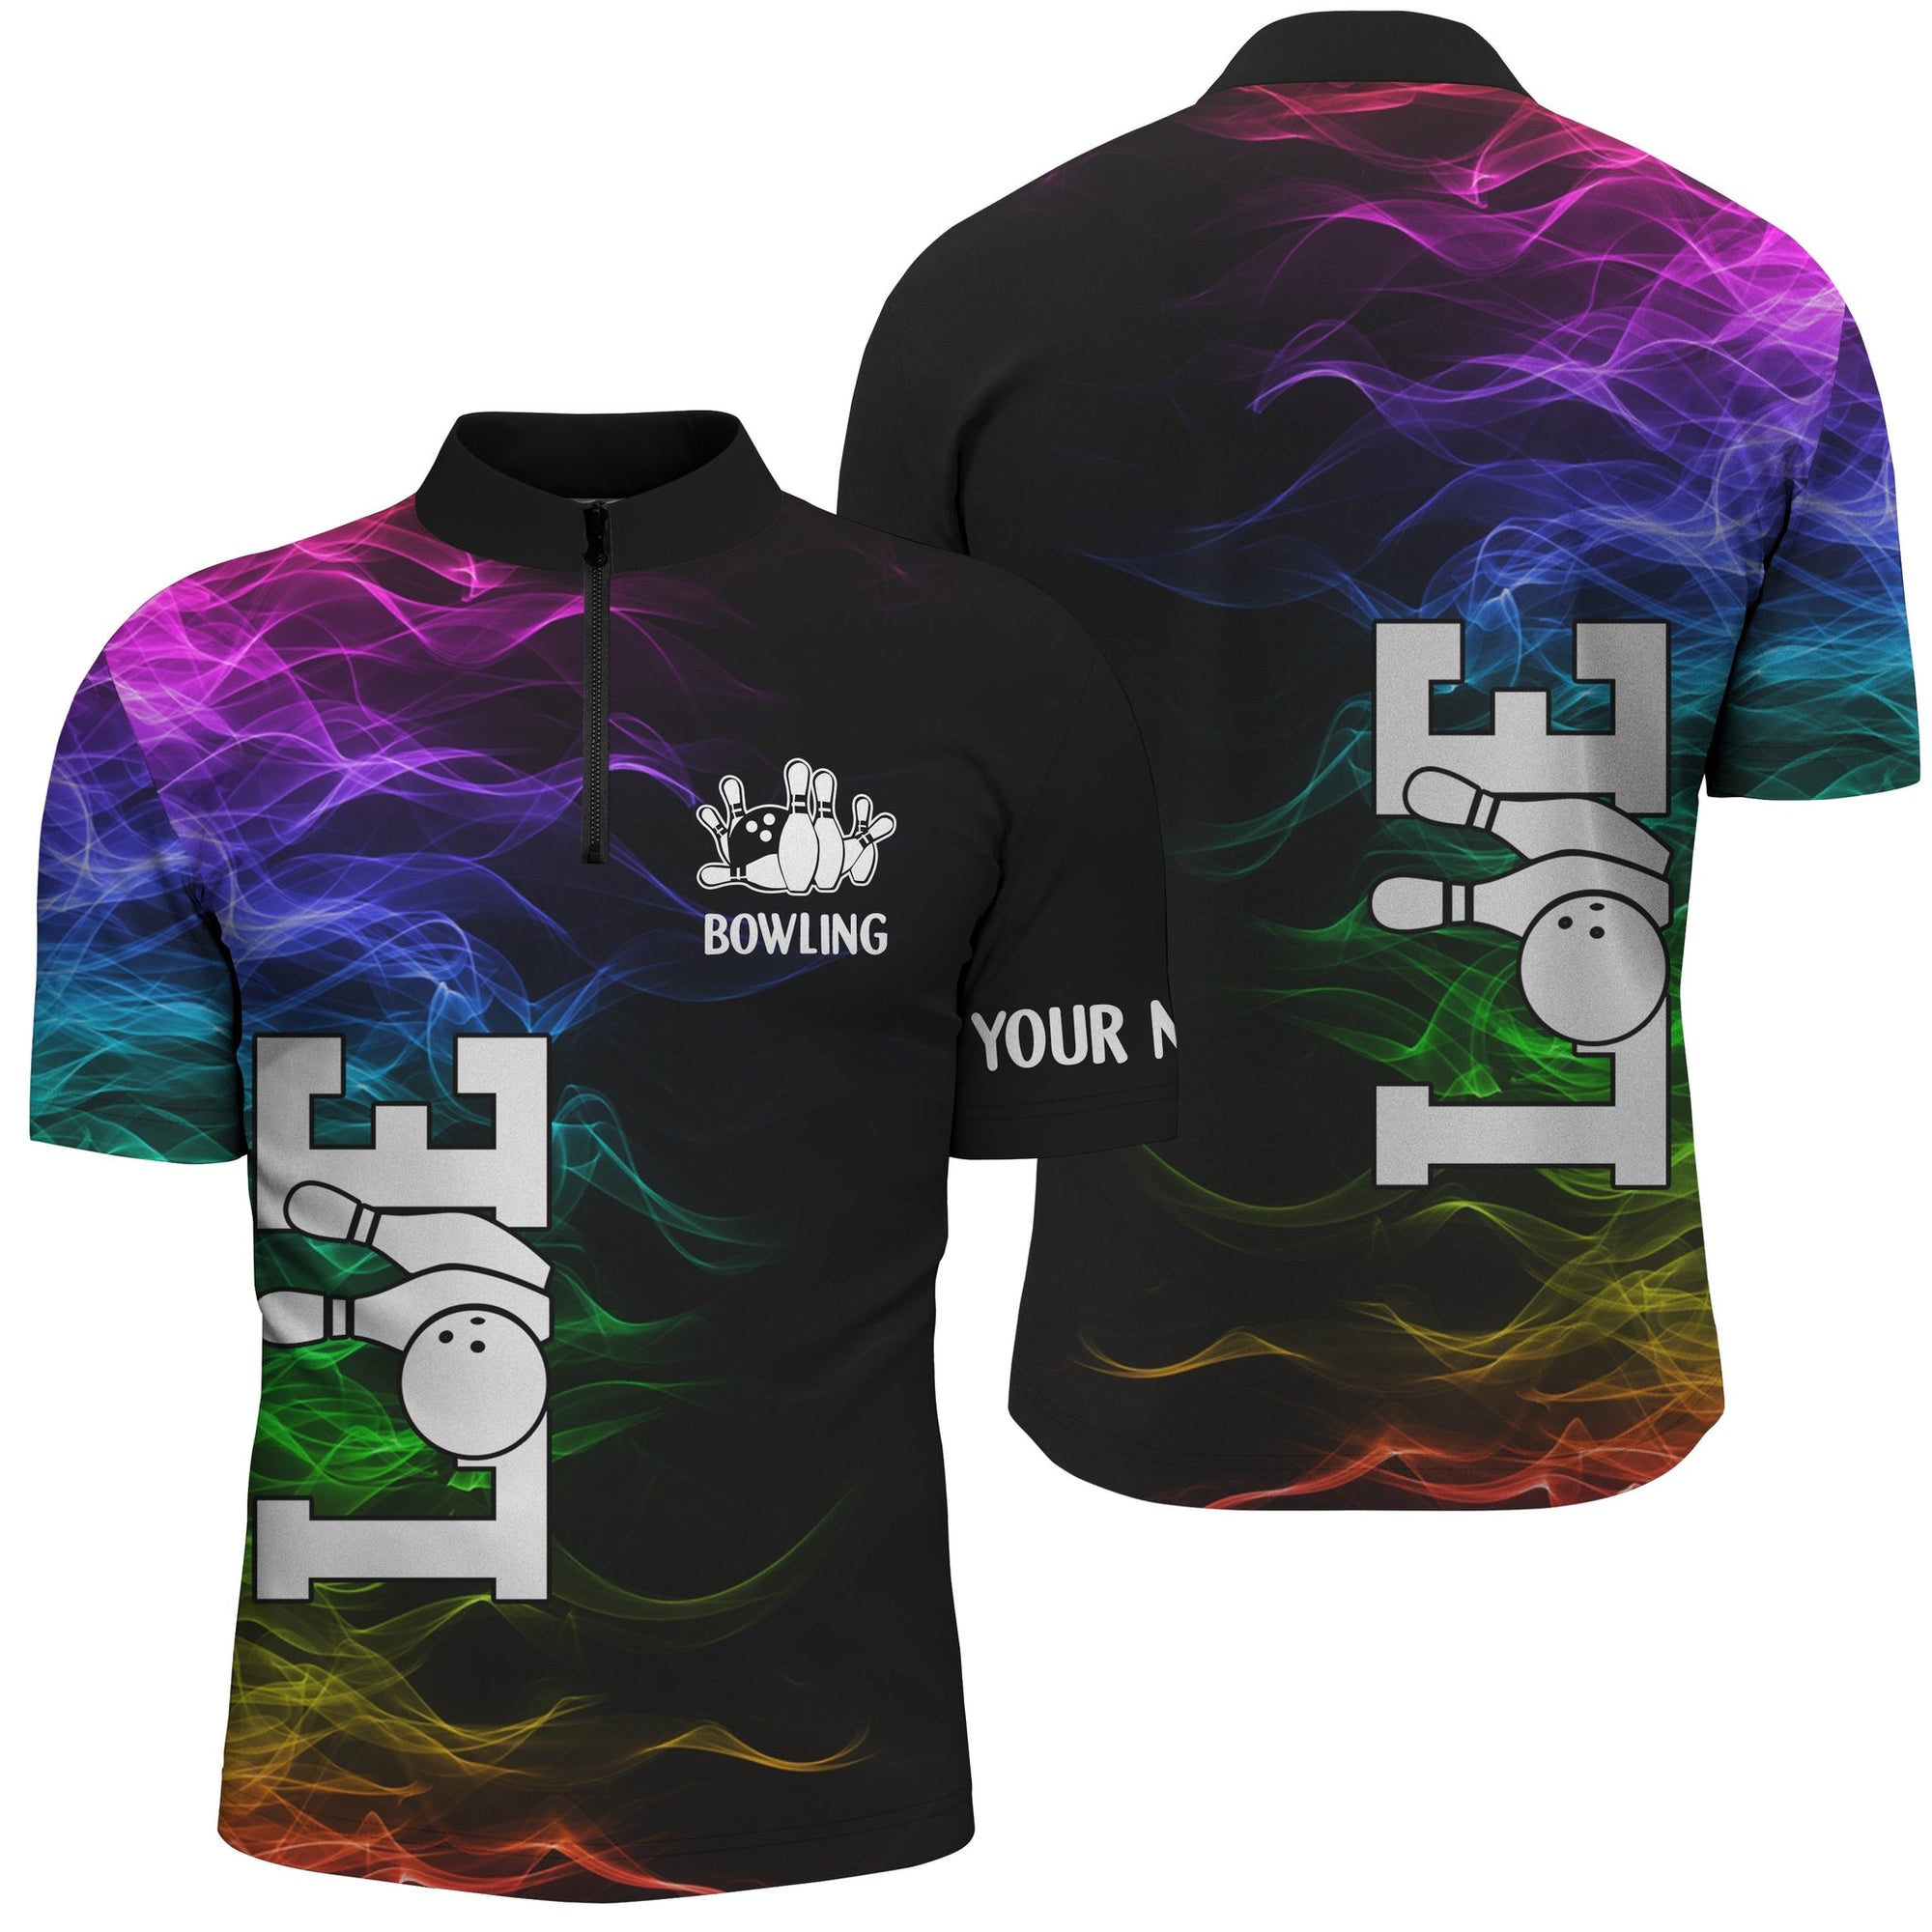 Bowling Customized Jersey Black Shirt Colorful Smoke Love Bowling Tenpin Quarter Zip Shirt For Bowlers, Bowling Team